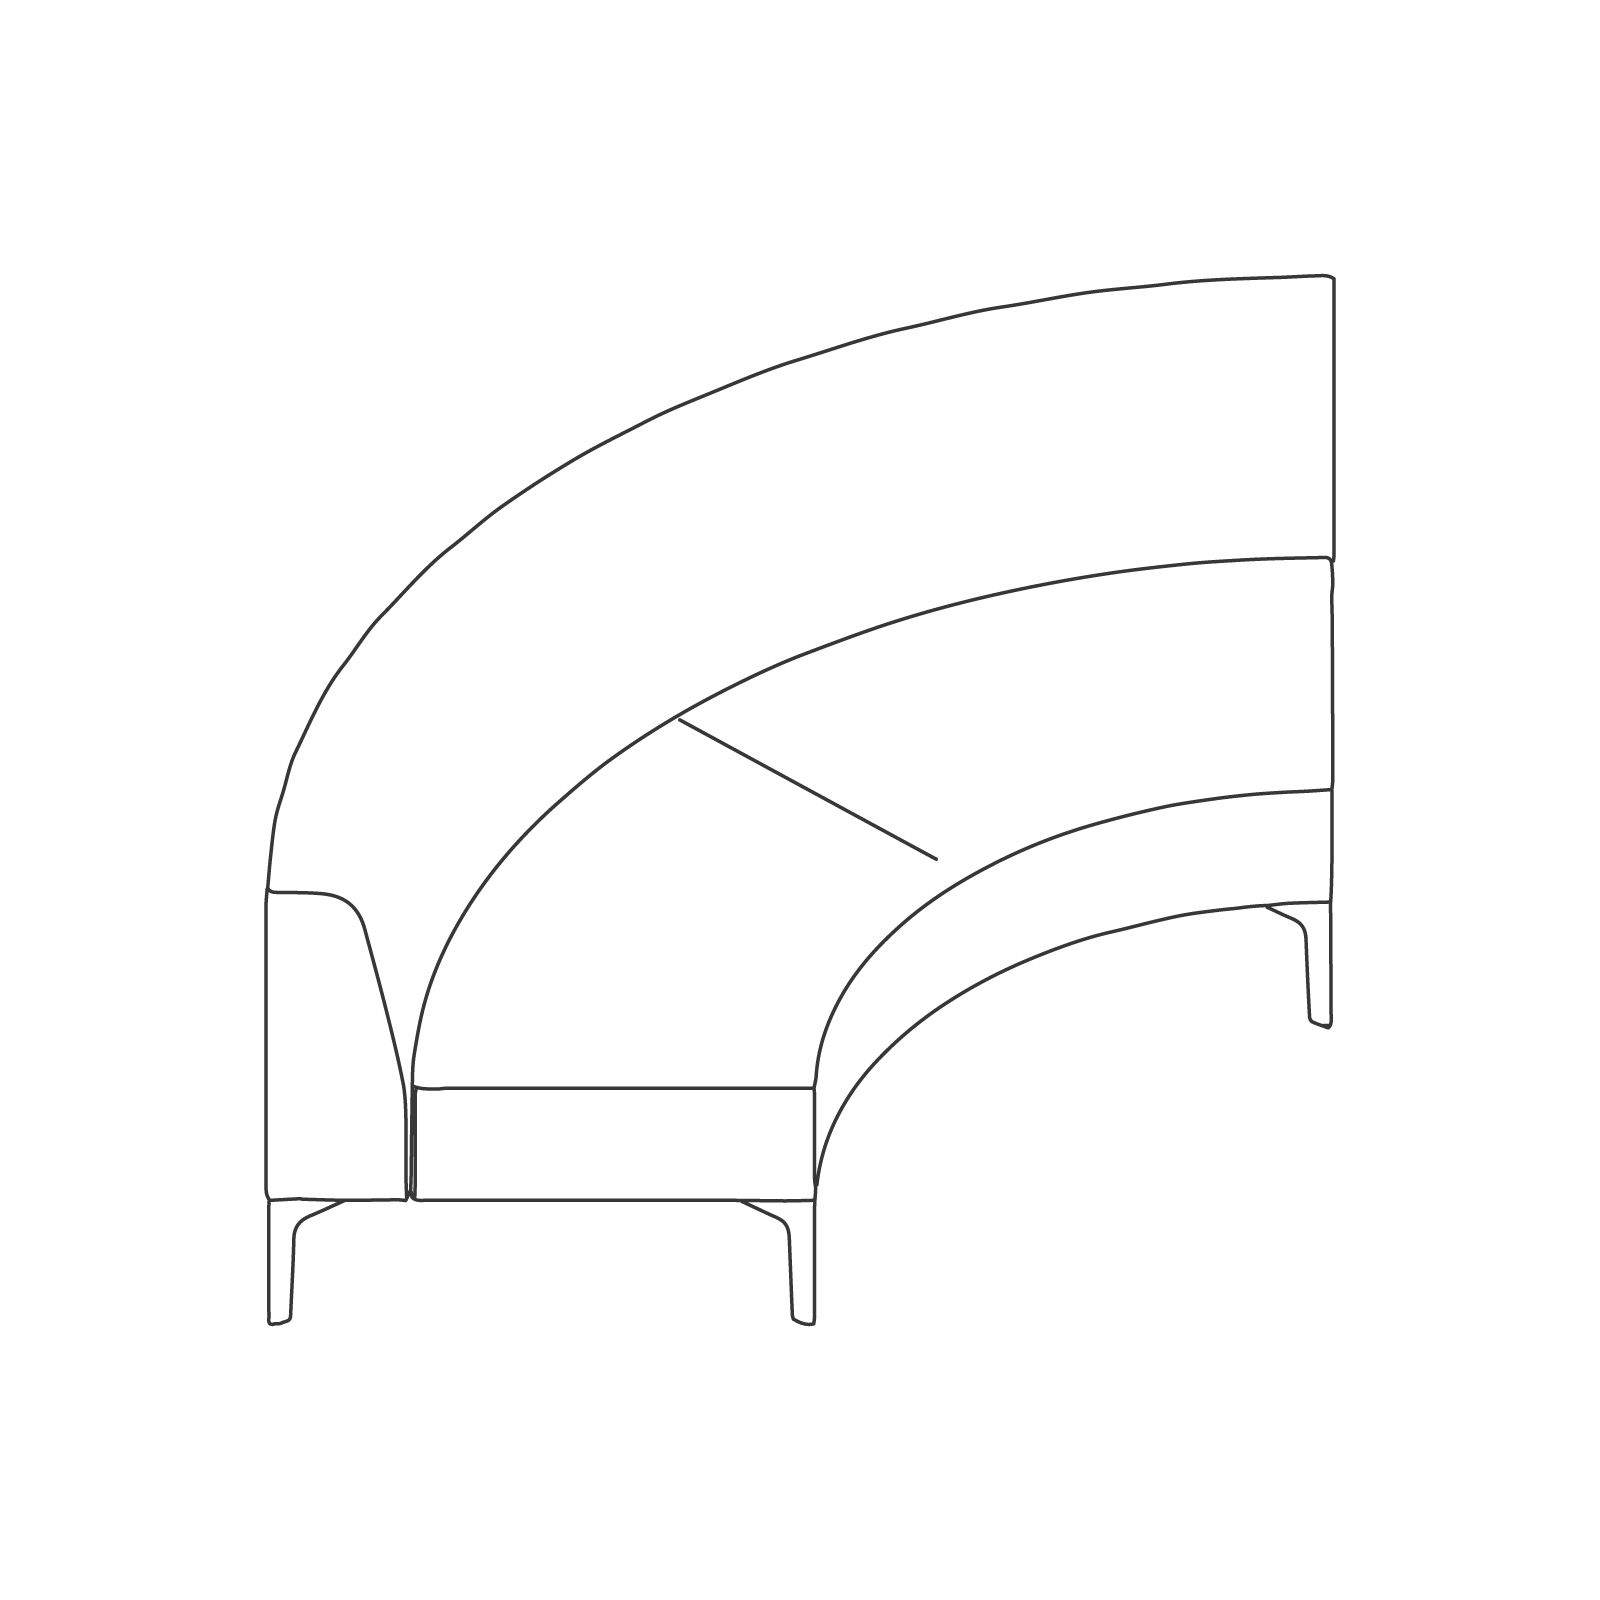 Un dibujo - Sillería modular Symbol – Curva de 90 grados